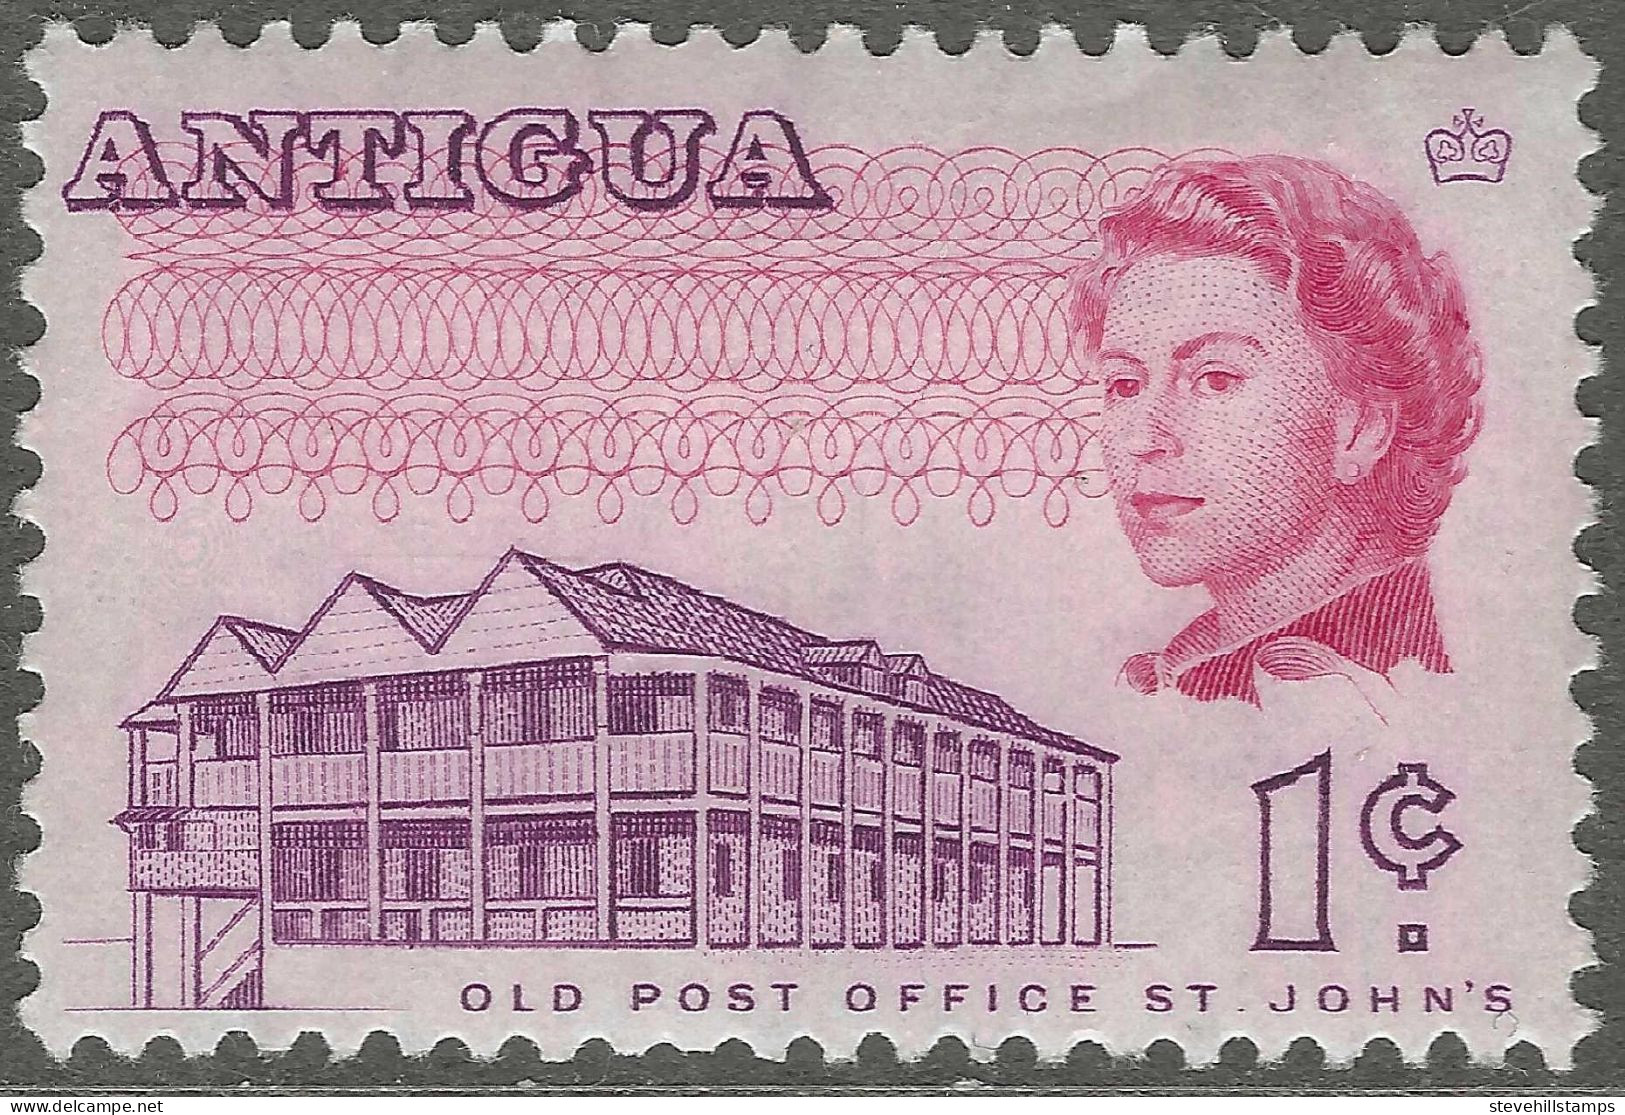 Antigua. 1966-70 QEII. 1c MH. P11½X11 SG 181 - 1960-1981 Autonomie Interne